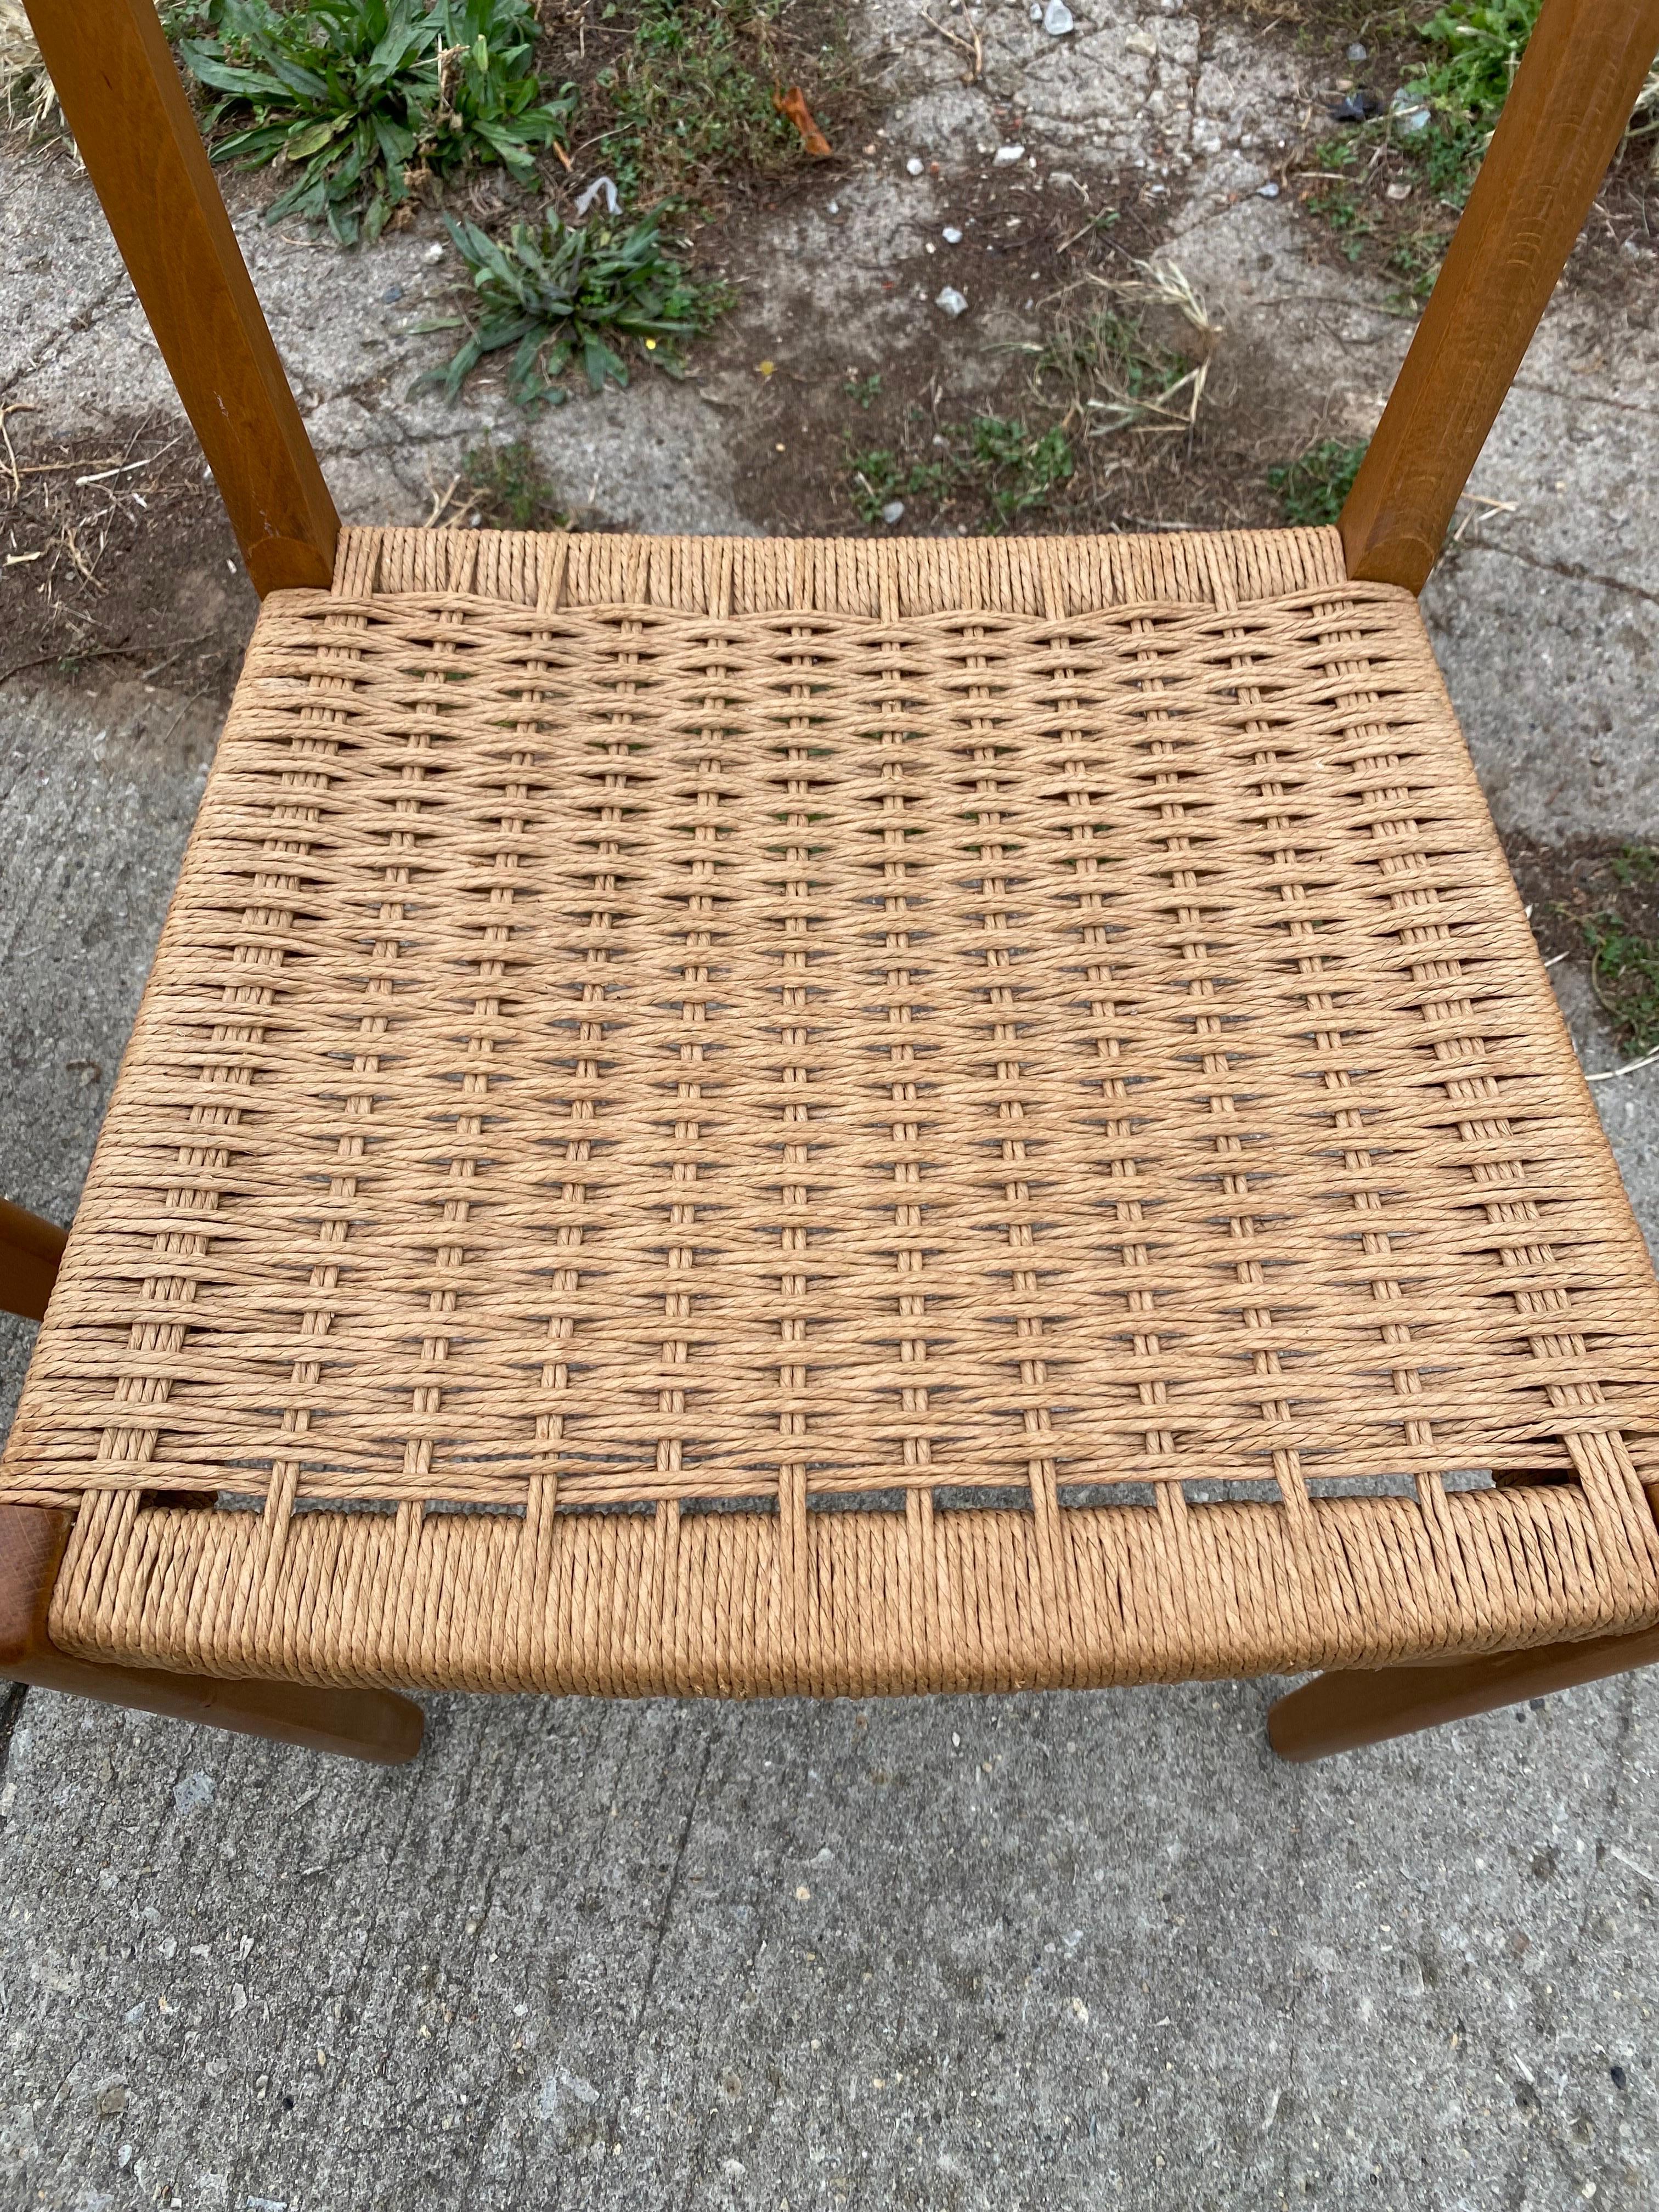 Paire de chaises suédoises en teck à corde de papier.  Parfaites pour être utilisées comme chaises d'appoint ou avec une table à manger.  Acheté à un représentant en ameublement qui a travaillé dans les années 60 et 70.  Cette paire a fini dans le